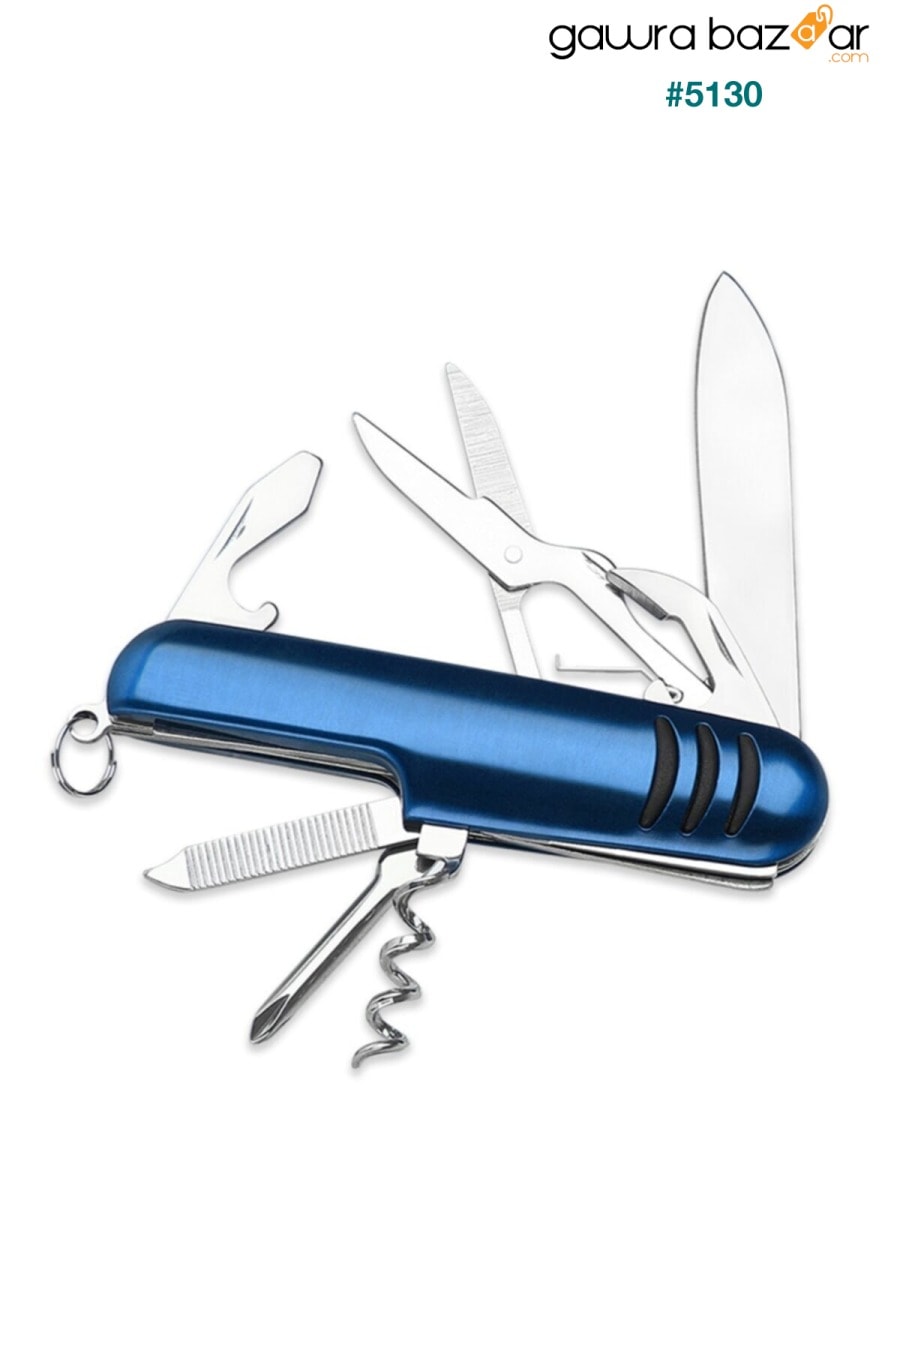 سكين الجيب متعدد الأغراض - سكين الجيش السويسري 7 وظائف - سكين معدني قابل للطي Tasarım Evi 0